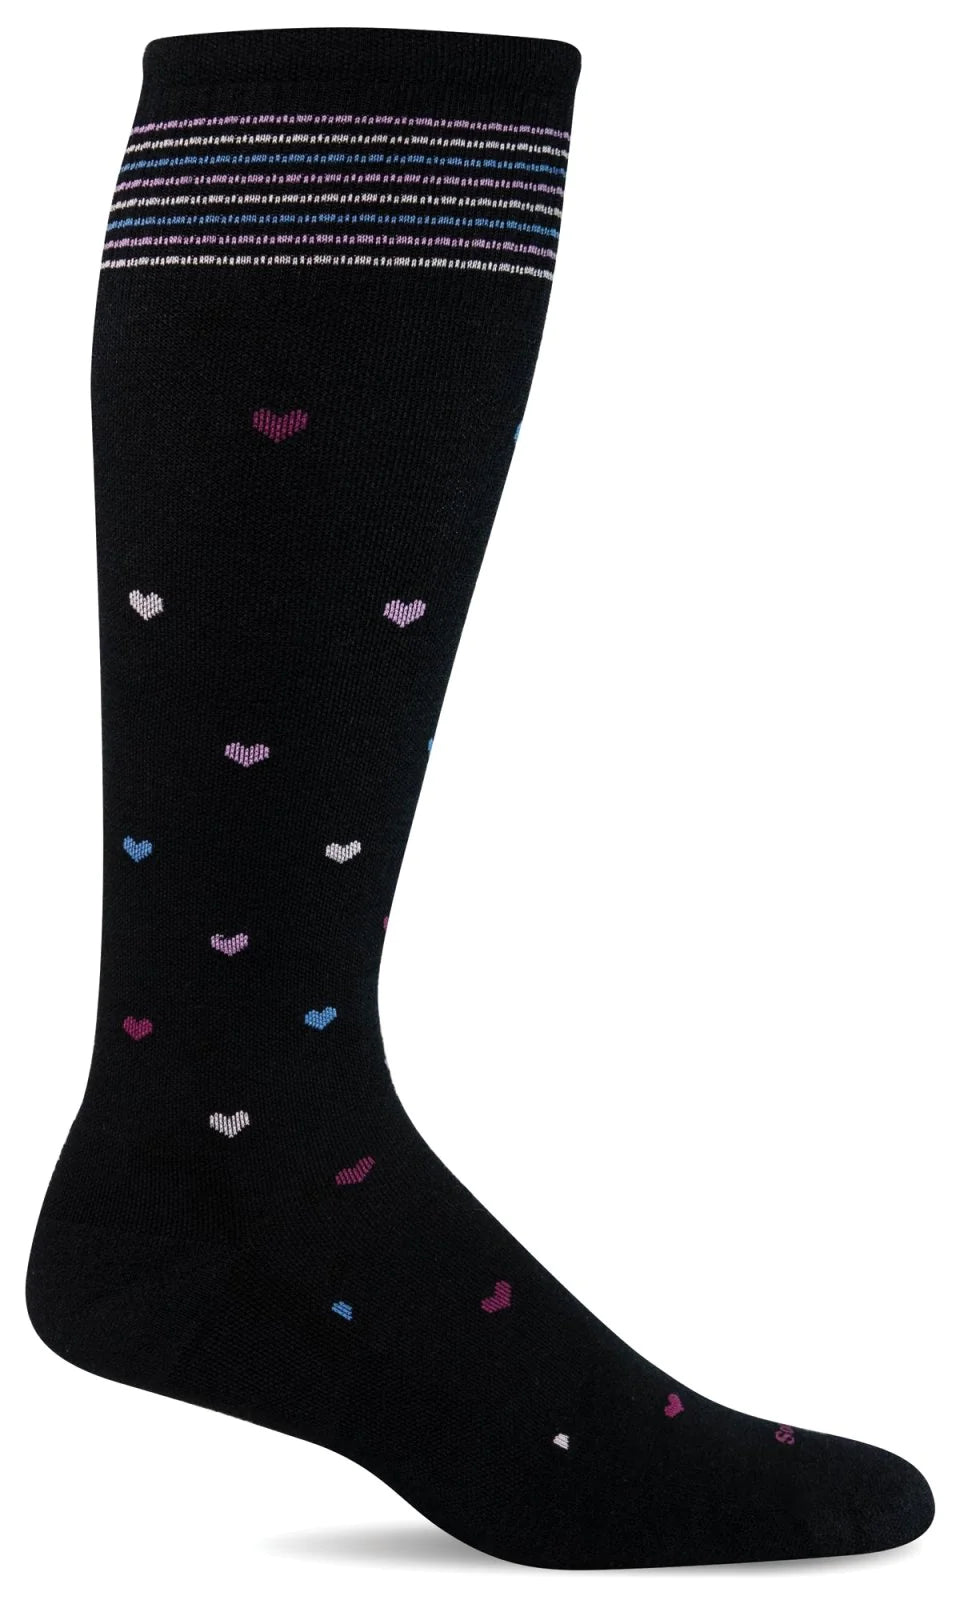 Sockwell Women's Compression Socks Full Heart Black